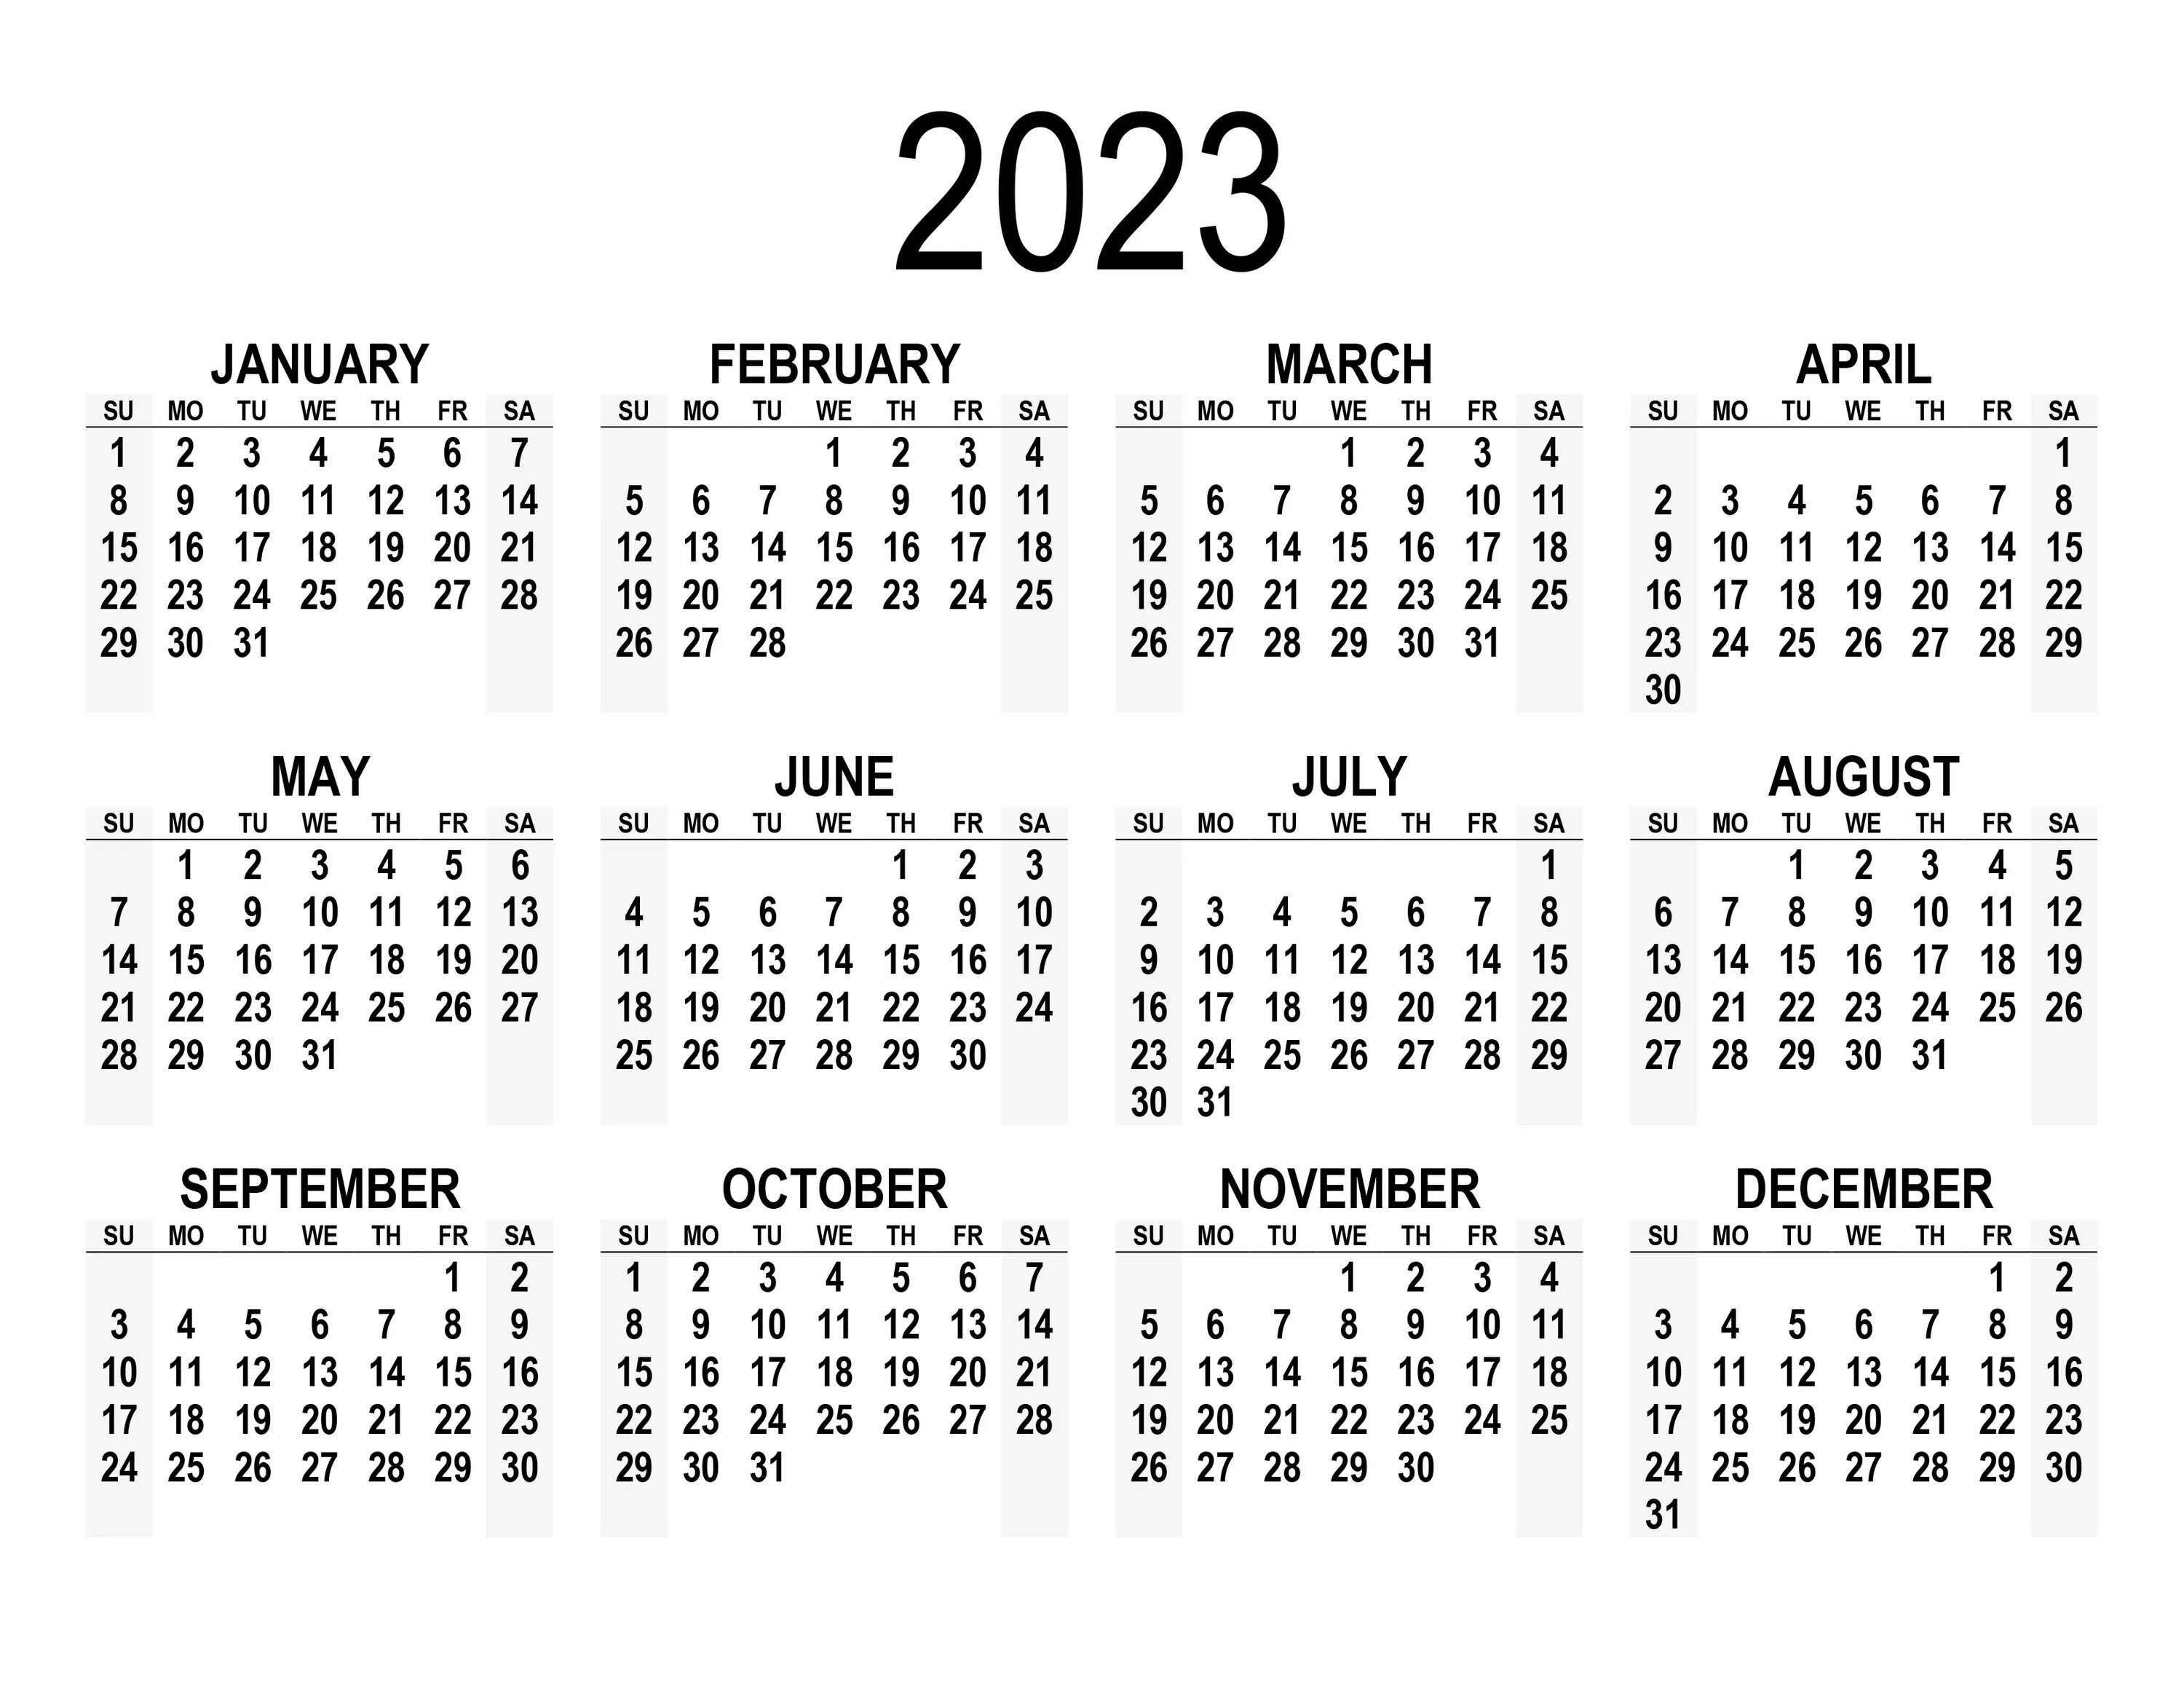 Календарь 2023. Календарь на 2023 год. Hrfktylfhm PF 2023 ujl. Календарь на 2023 год с картинками.